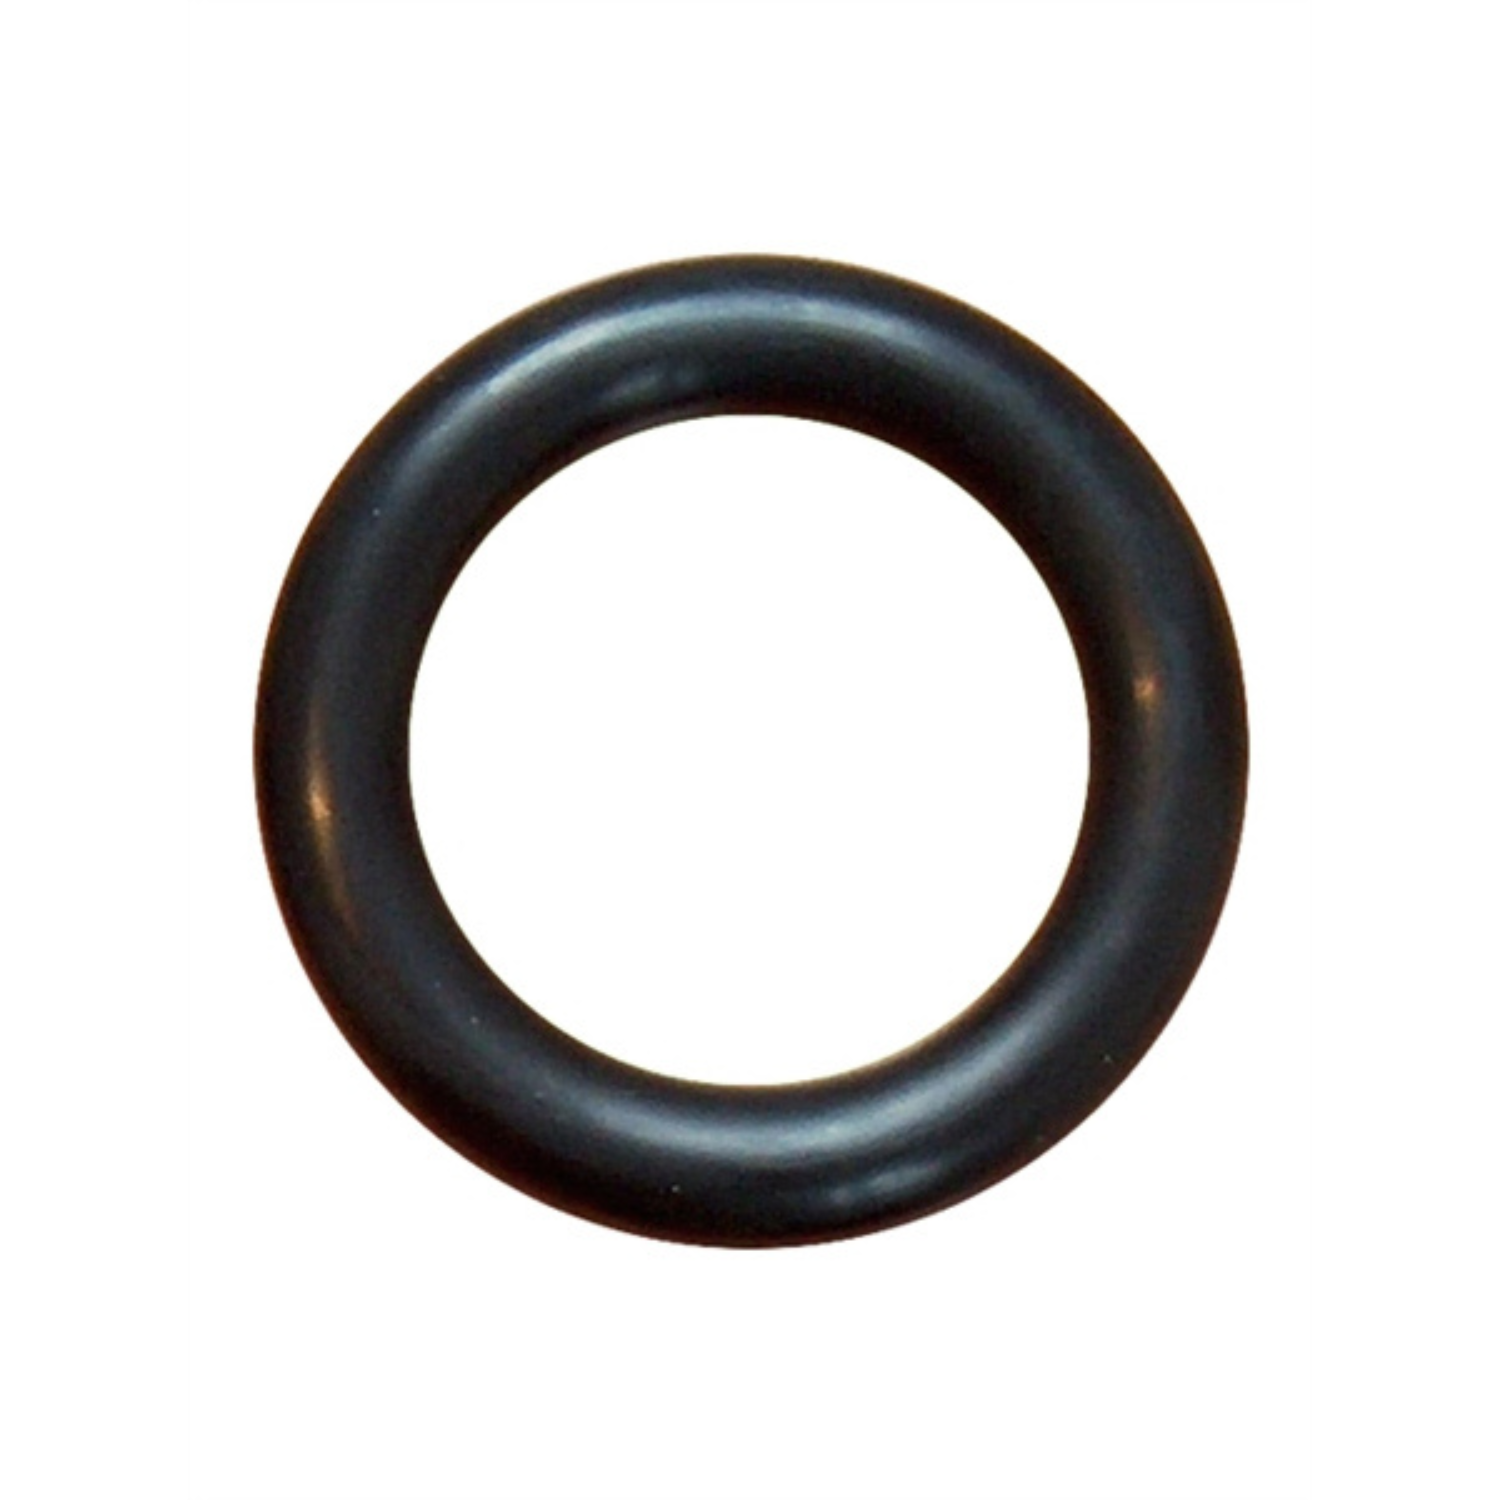 Deze dikke zwarte cock ring met een diameter van 55 mm, van Mister B en te koop bij Flavourez.